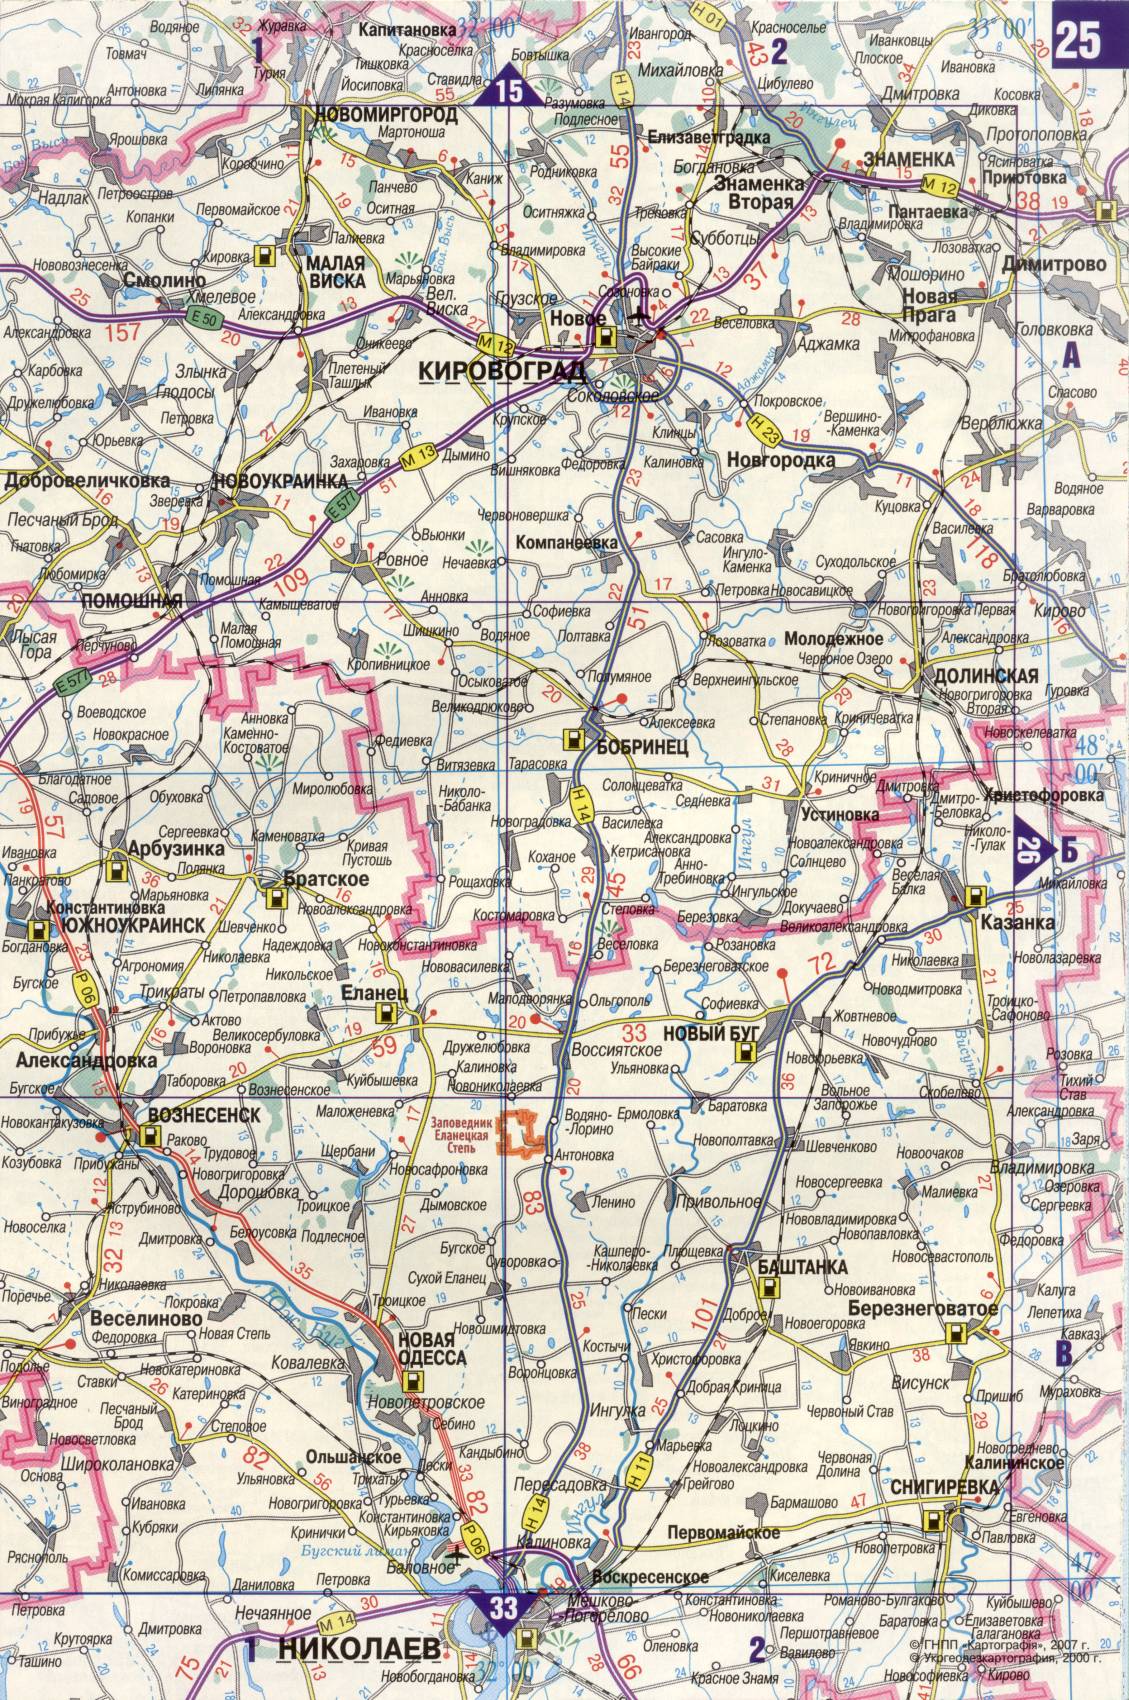 Карта Украины. Подробная карта дорог Украина из автомобильног атласа. скачать бесплатно, F2